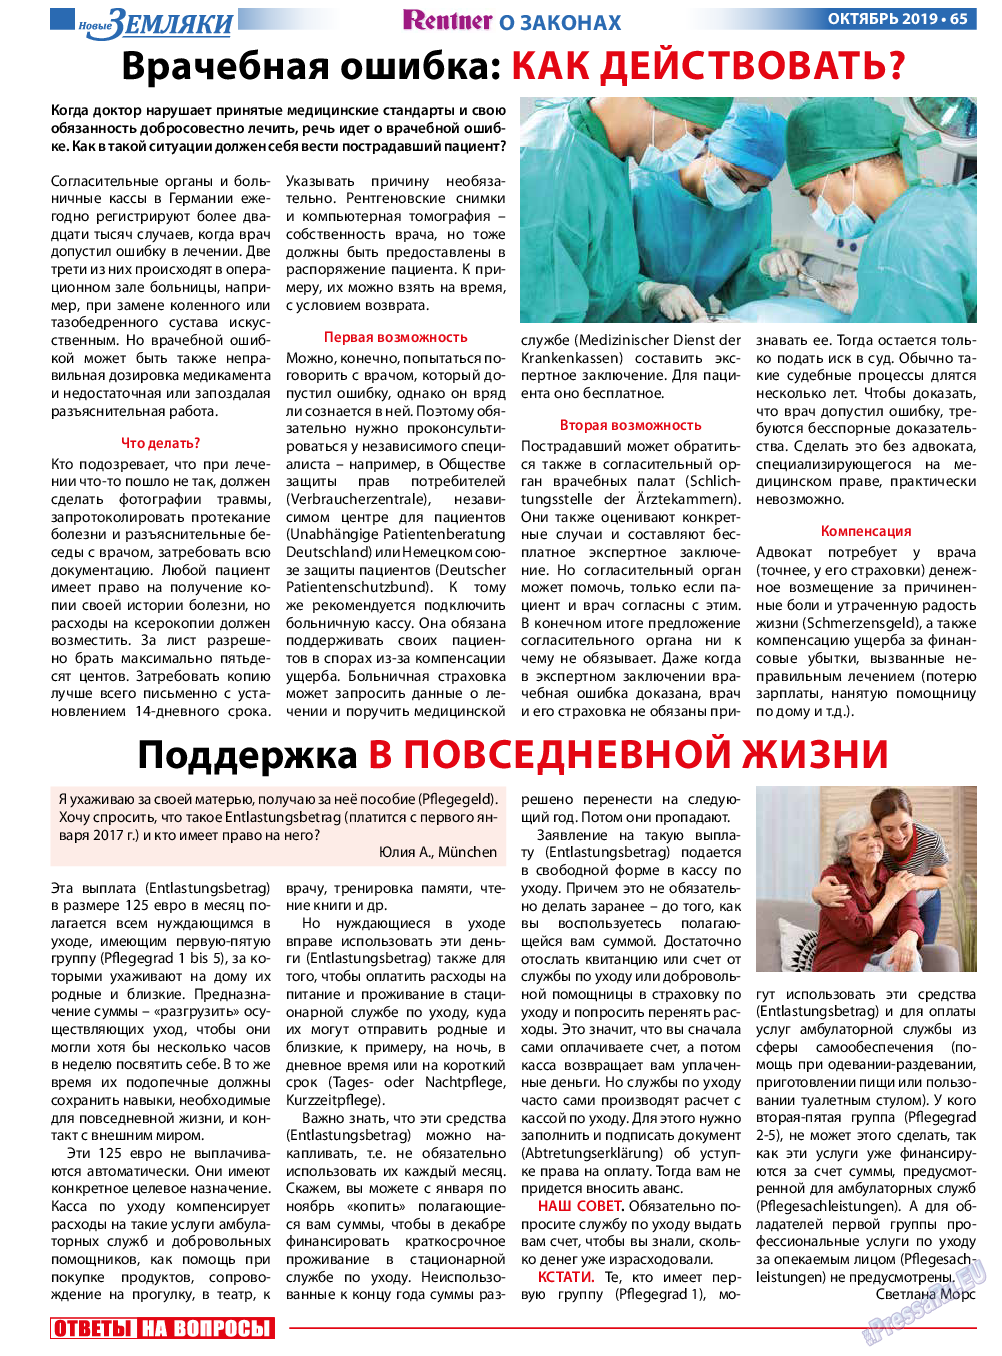 Новые Земляки, газета. 2019 №10 стр.65